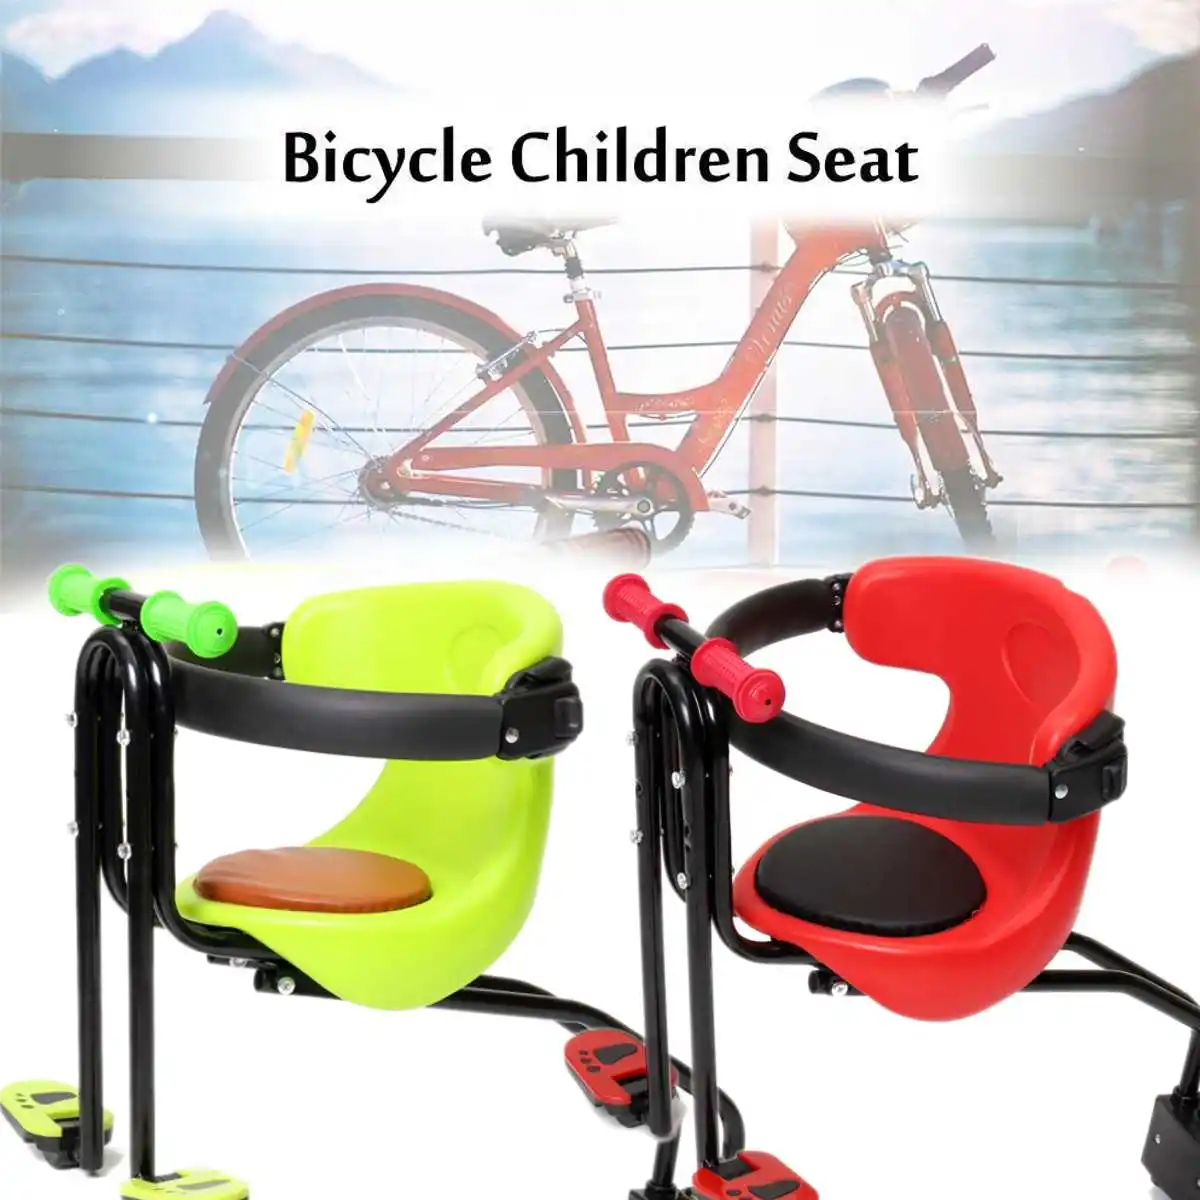 Горячая Распродажа, Горный Дорожный велосипед, детское безопасное сиденье, детский велосипед сиденье, размещаемое спереди, подходит для детей 0-6 лет, красный, зеленый